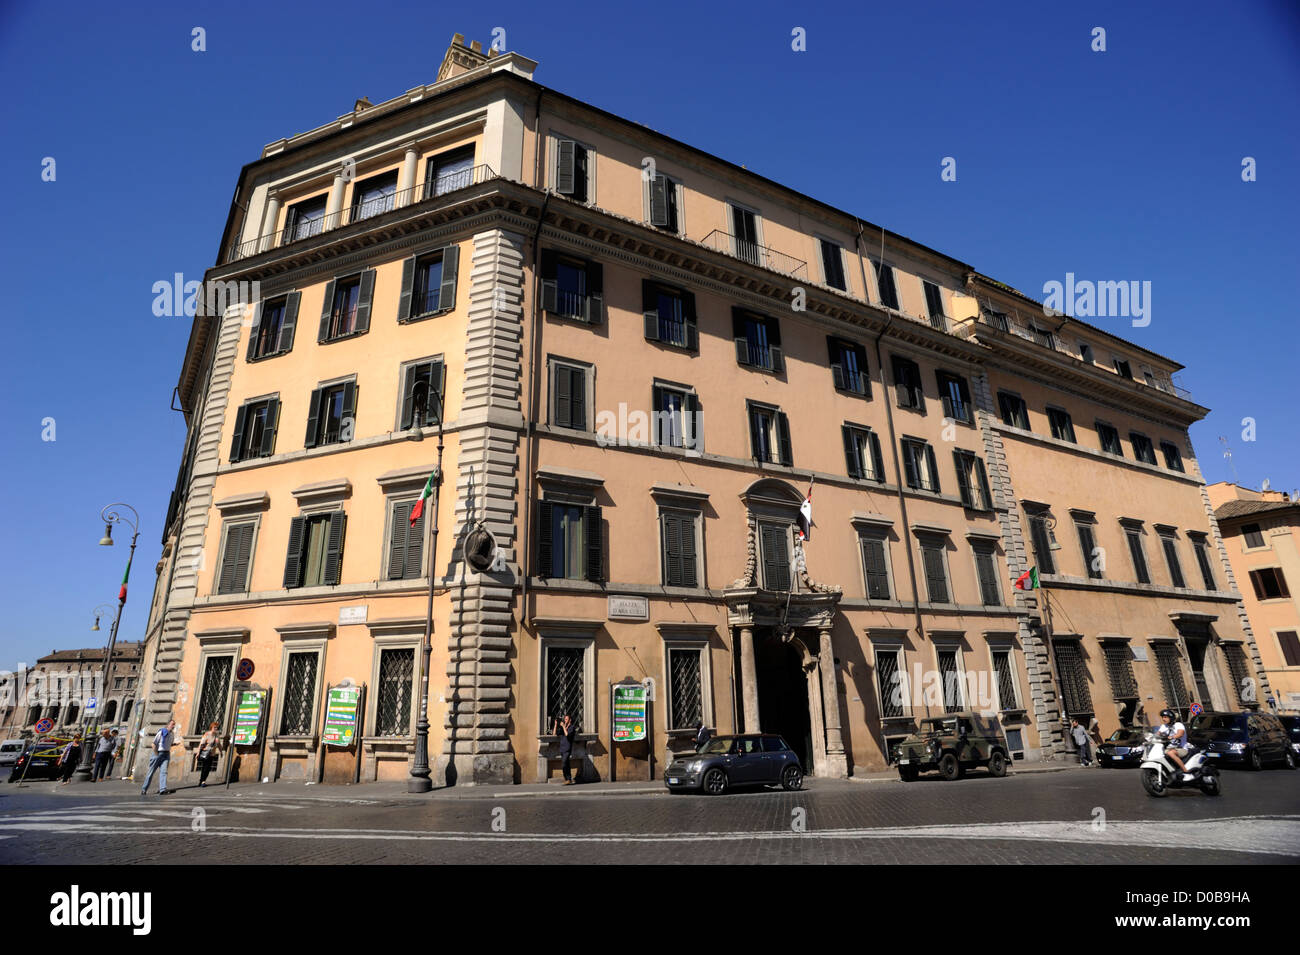 Italy, Rome, Piazza d'aracoeli, Palazzo Massimo di Rignano Colonna Stock  Photo - Alamy